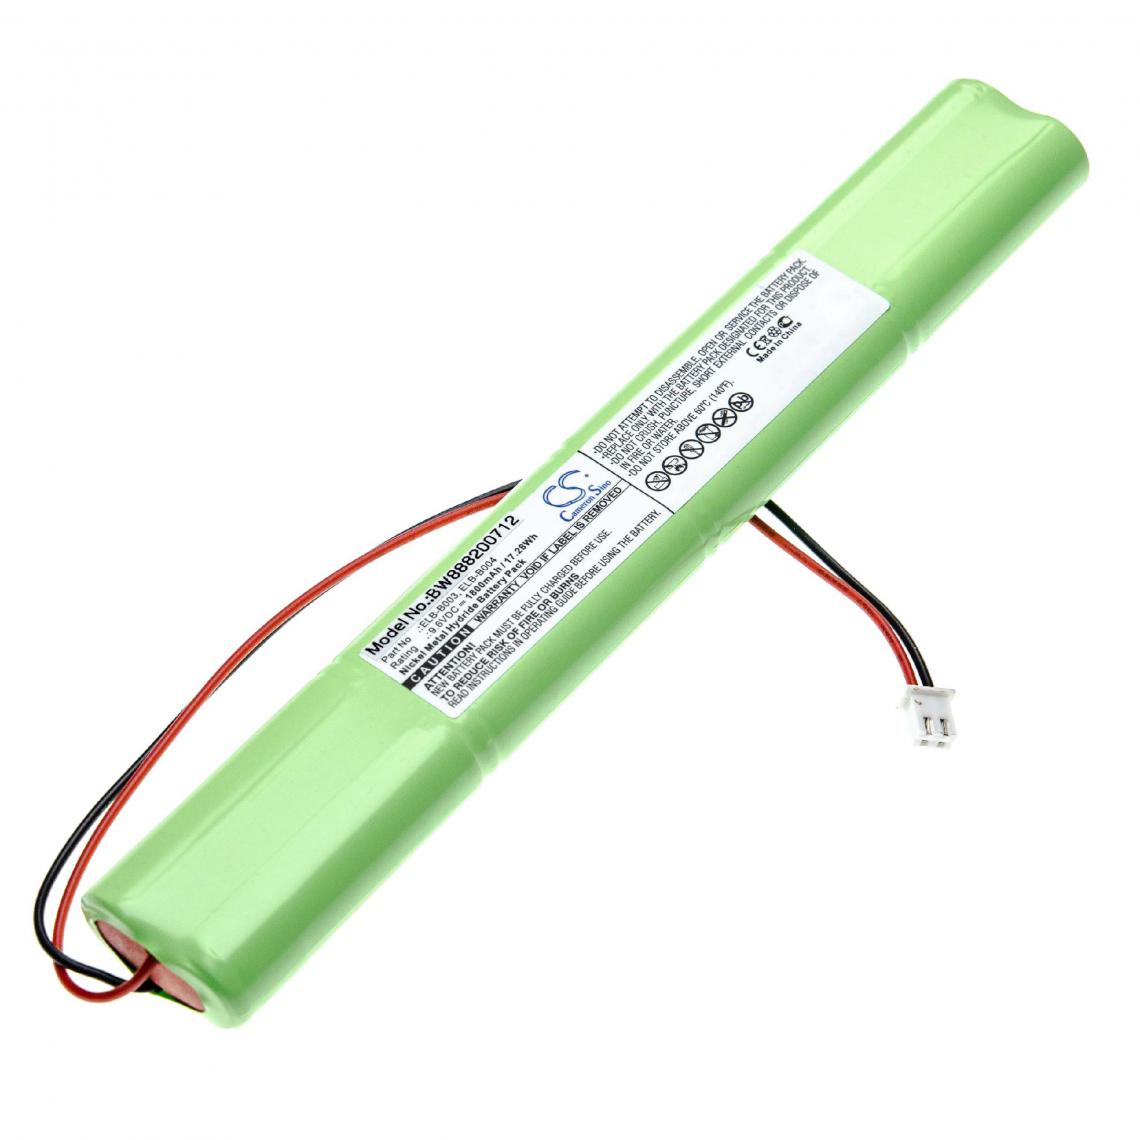 Vhbw - vhbw batterie remplace Lithonia BCN800-8BWP-CE005, BGN800-8BWP-500EC, ELB-B003, ELB-B004 pour issues/éclairage de secours (1800mAh, 9.6V, NiMH) - Autre appareil de mesure